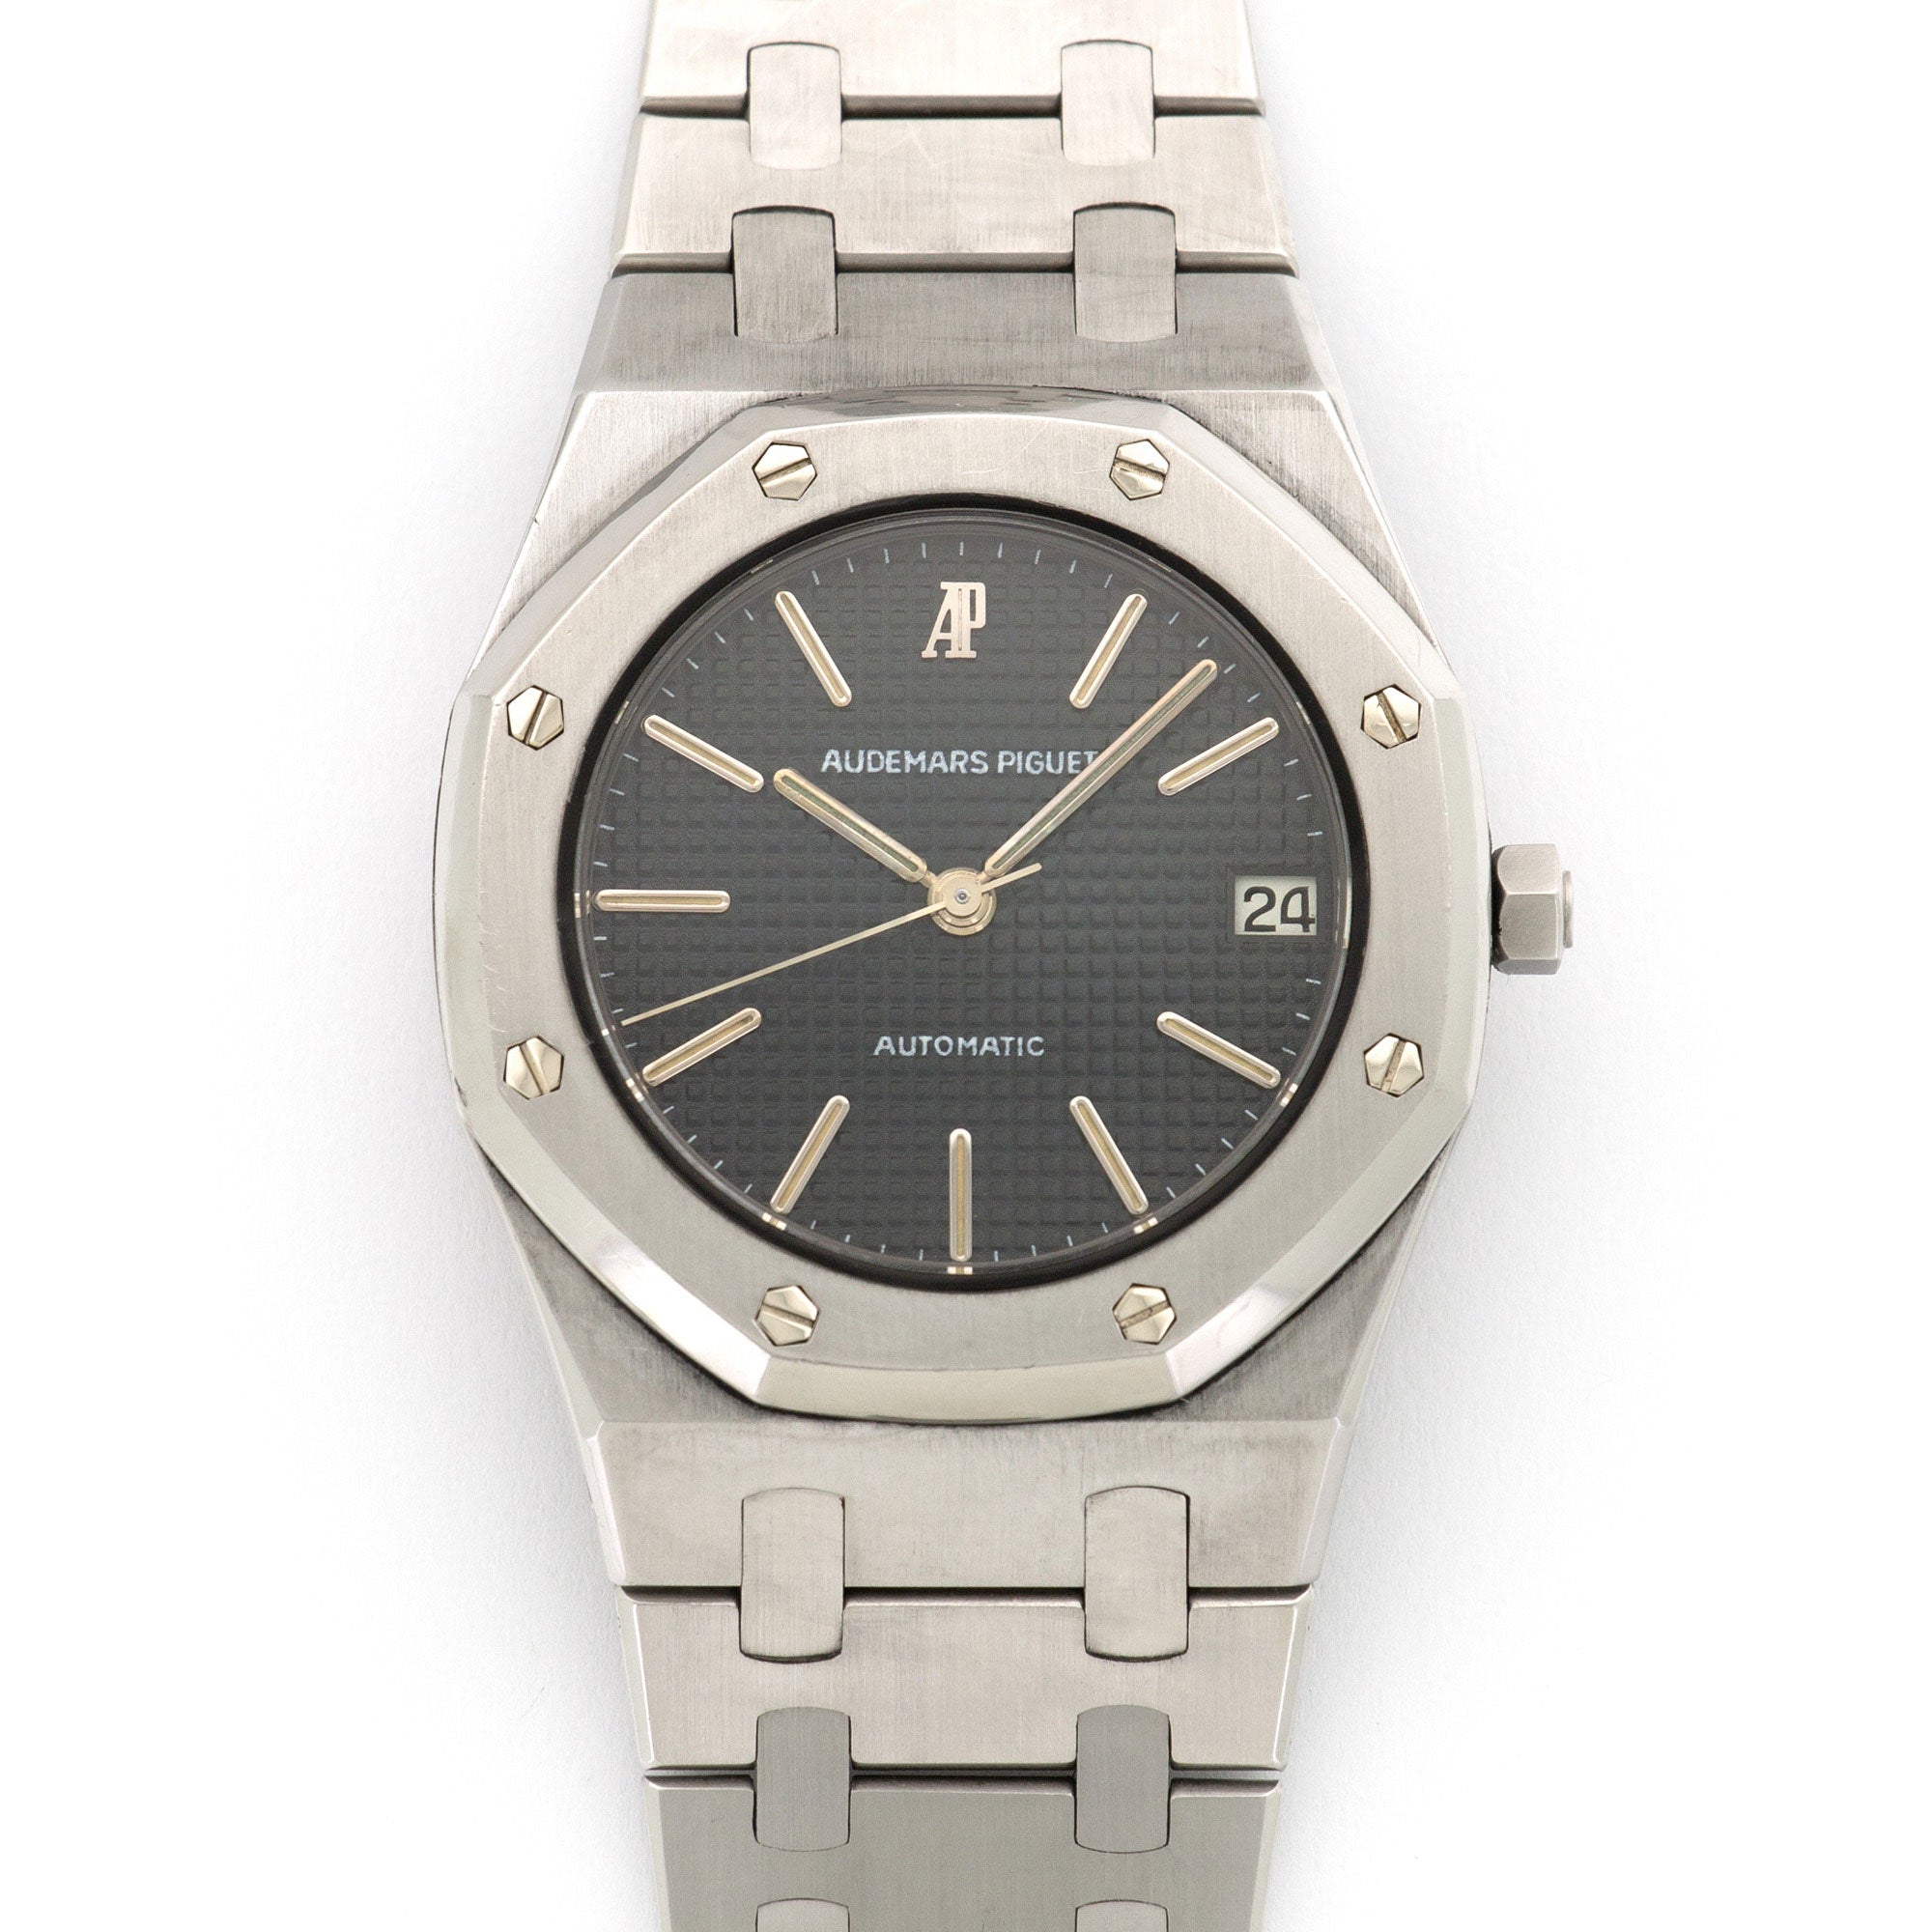 Audemars Piguet - Audemars Piguet Royal Oak Automatic Watch Ref. 4100 - The Keystone Watches